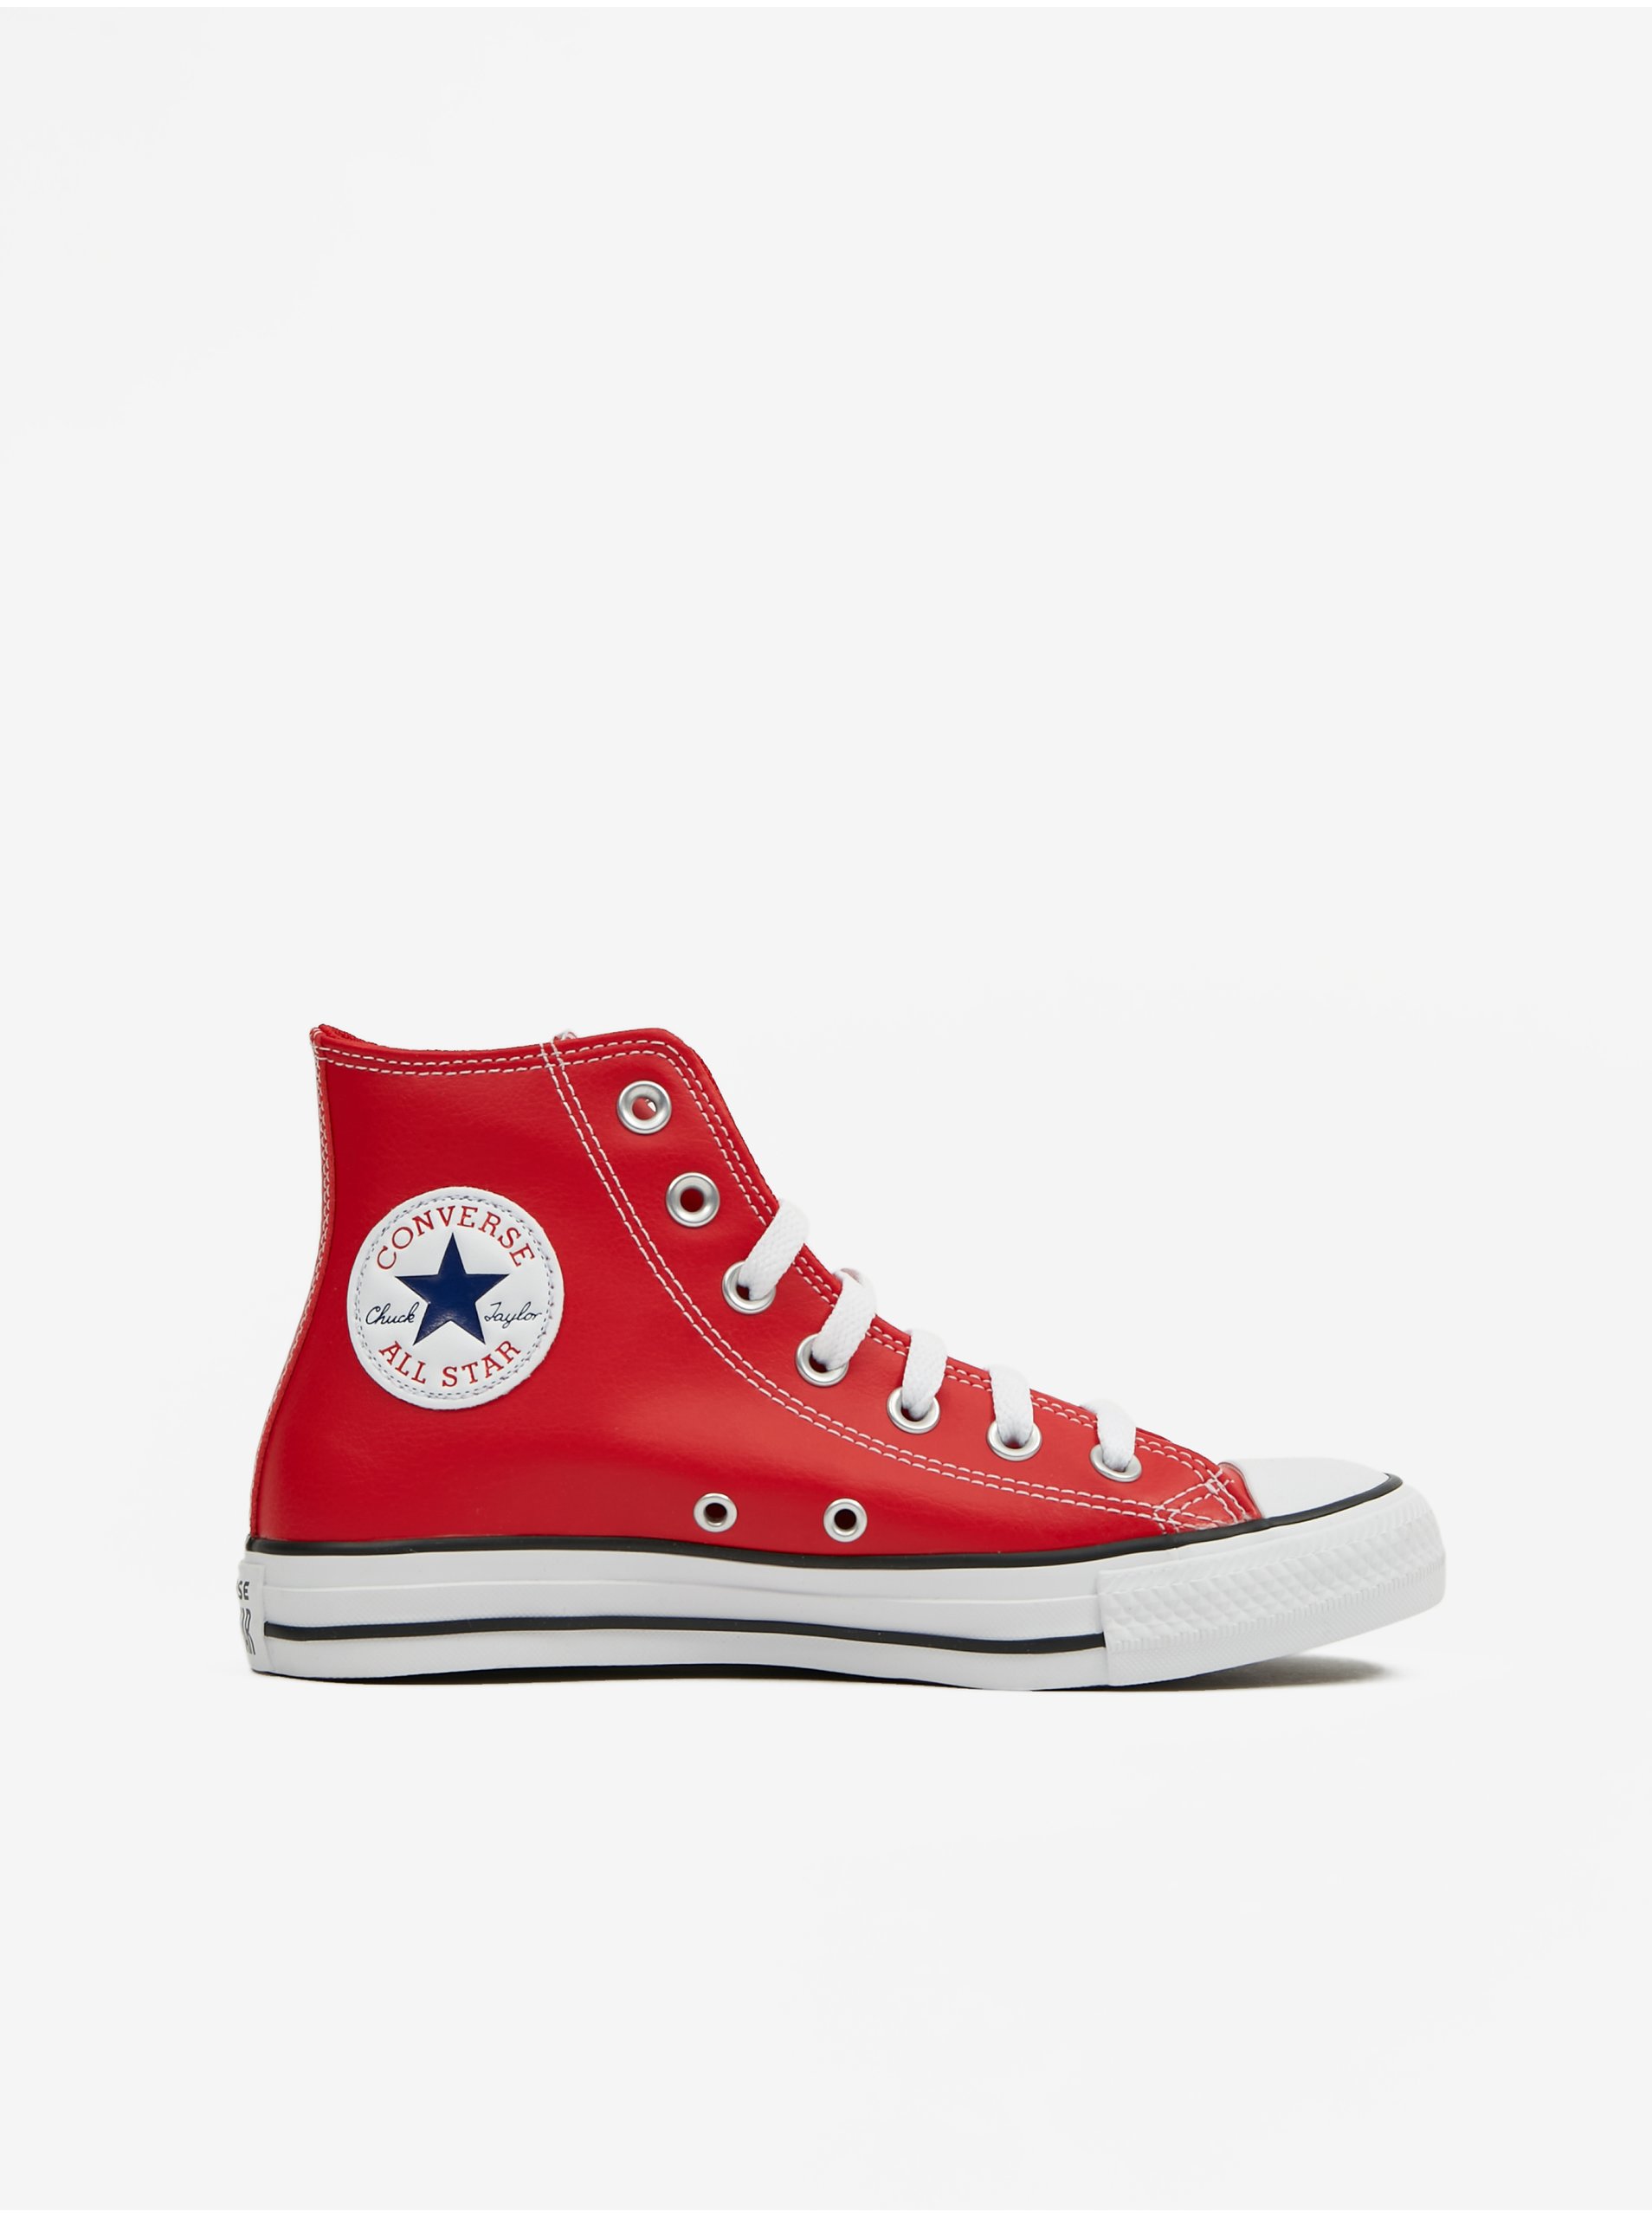 E-shop Červené kotníkové koženkové tenisky Converse Chuck Taylor All Star